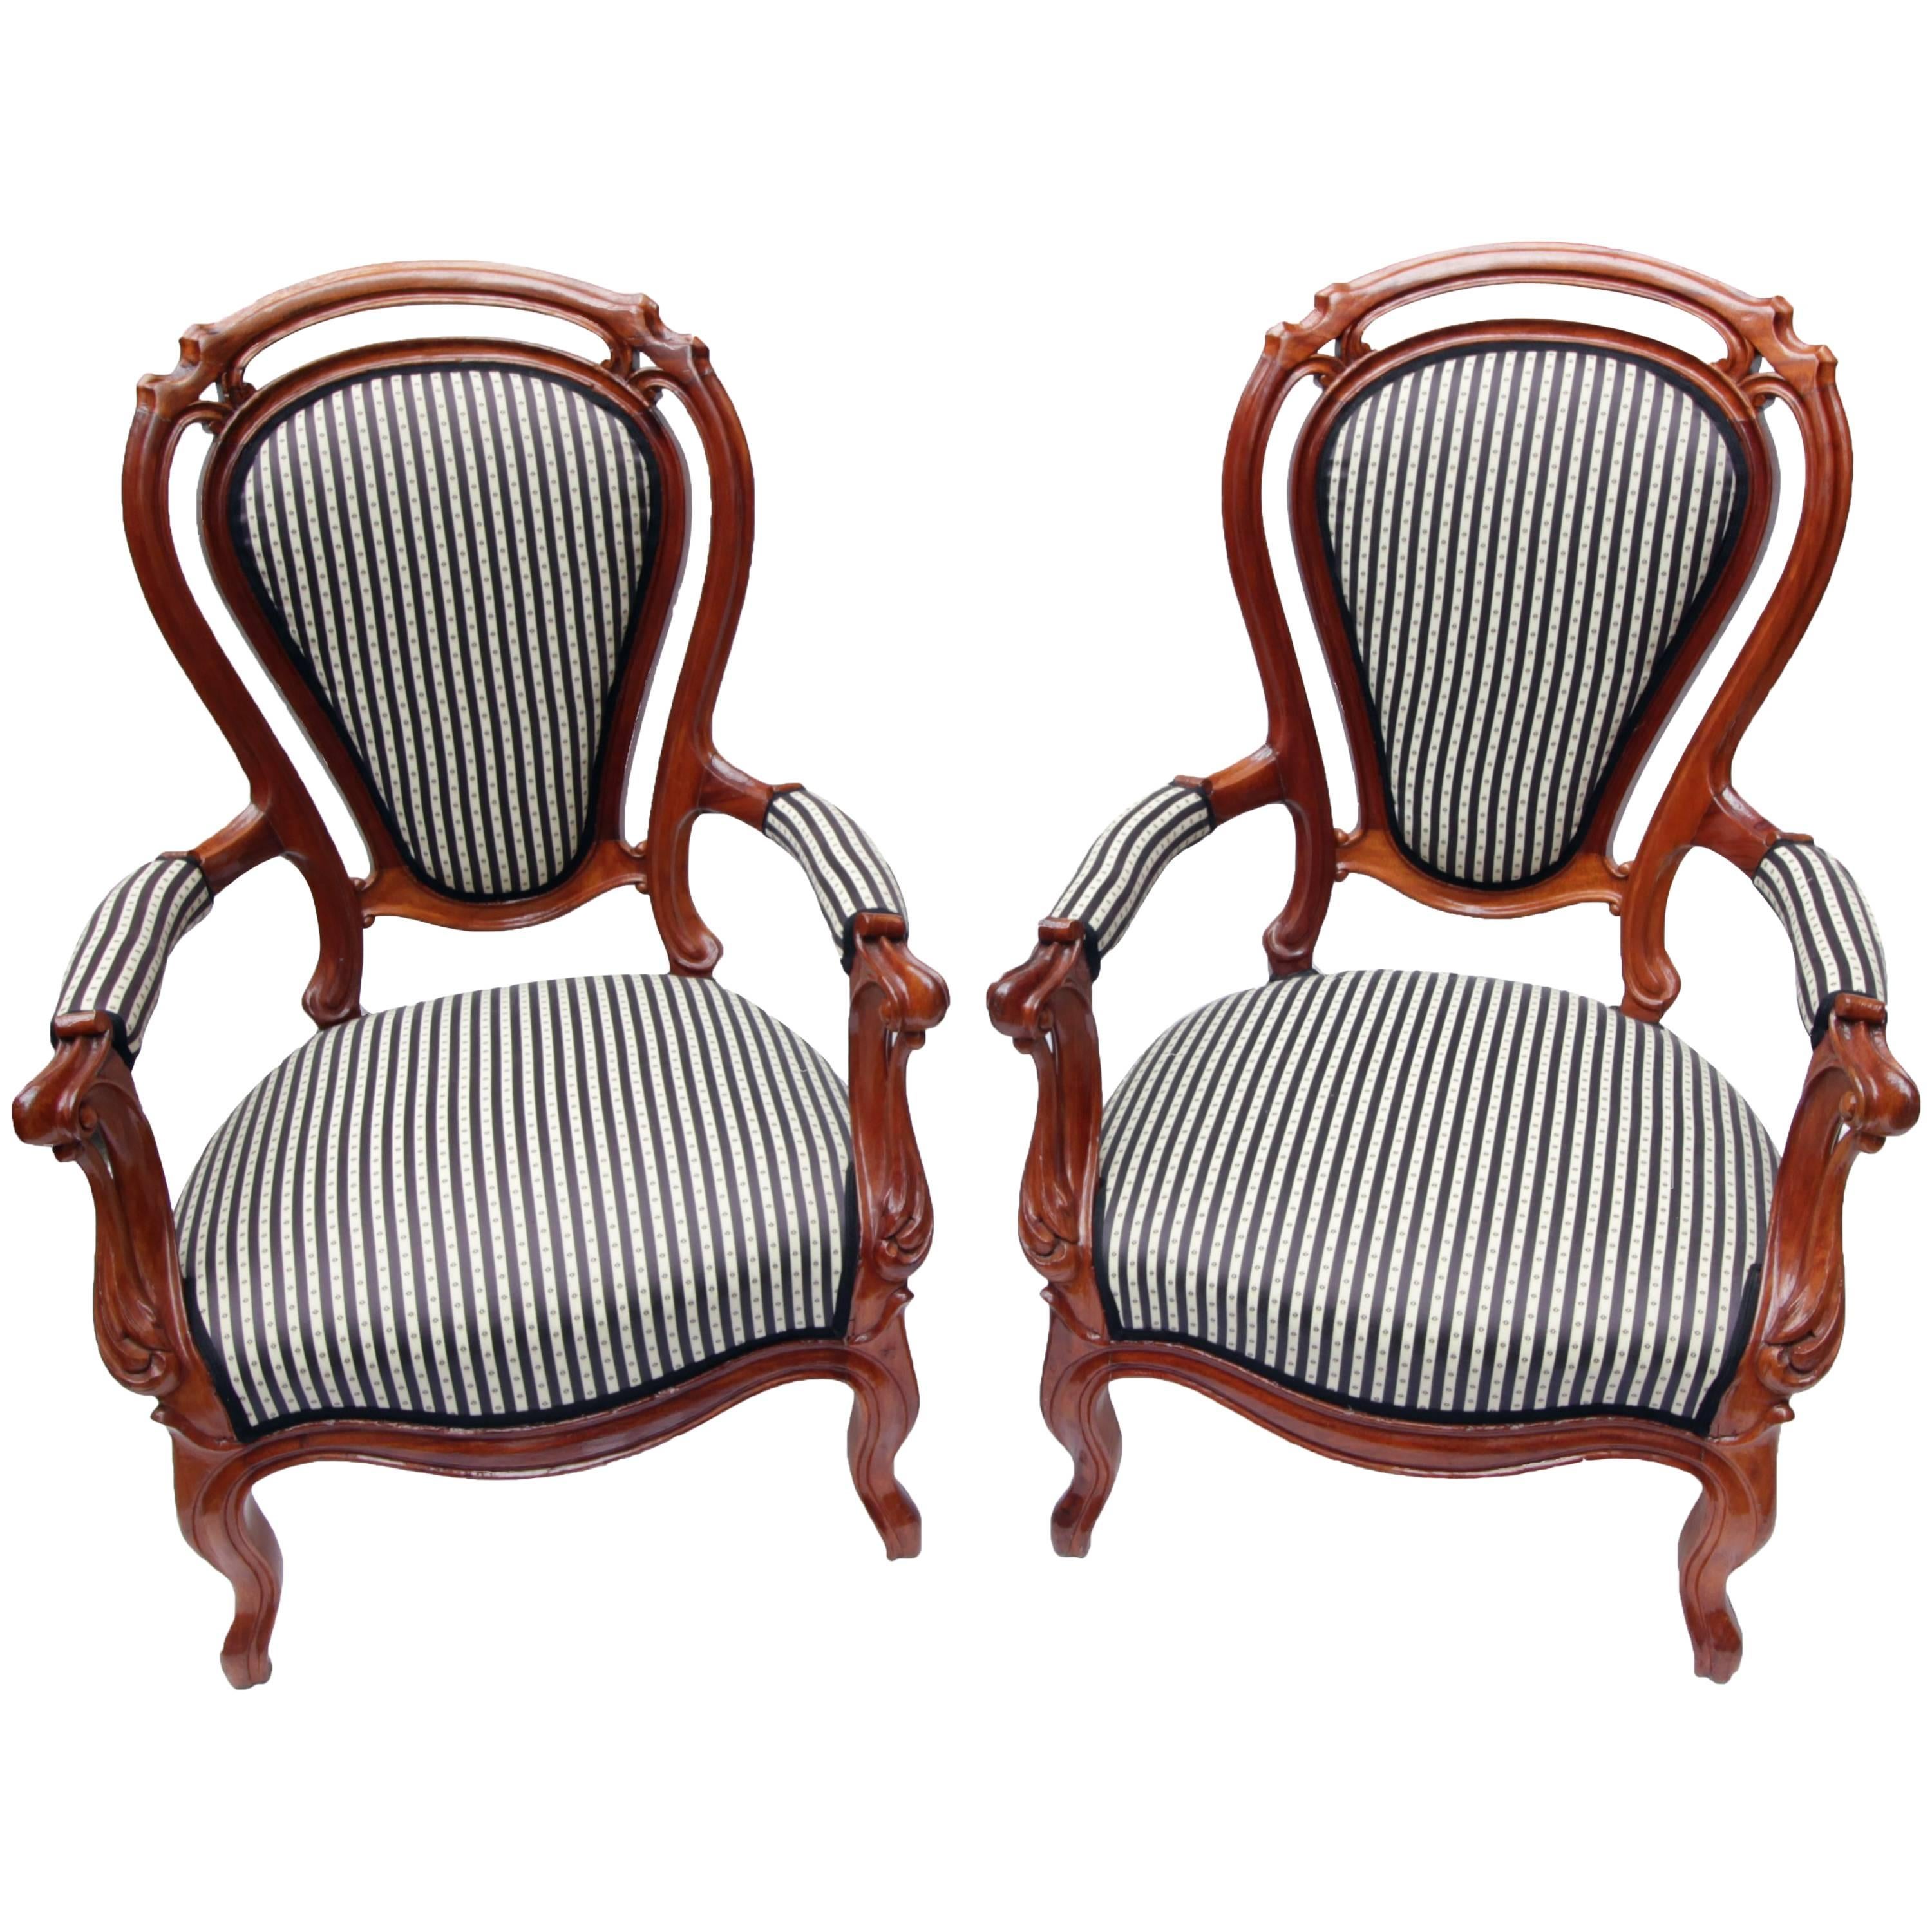 Fauteuil Louis Philippe du 19ème siècle, ensemble de deux fauteuils